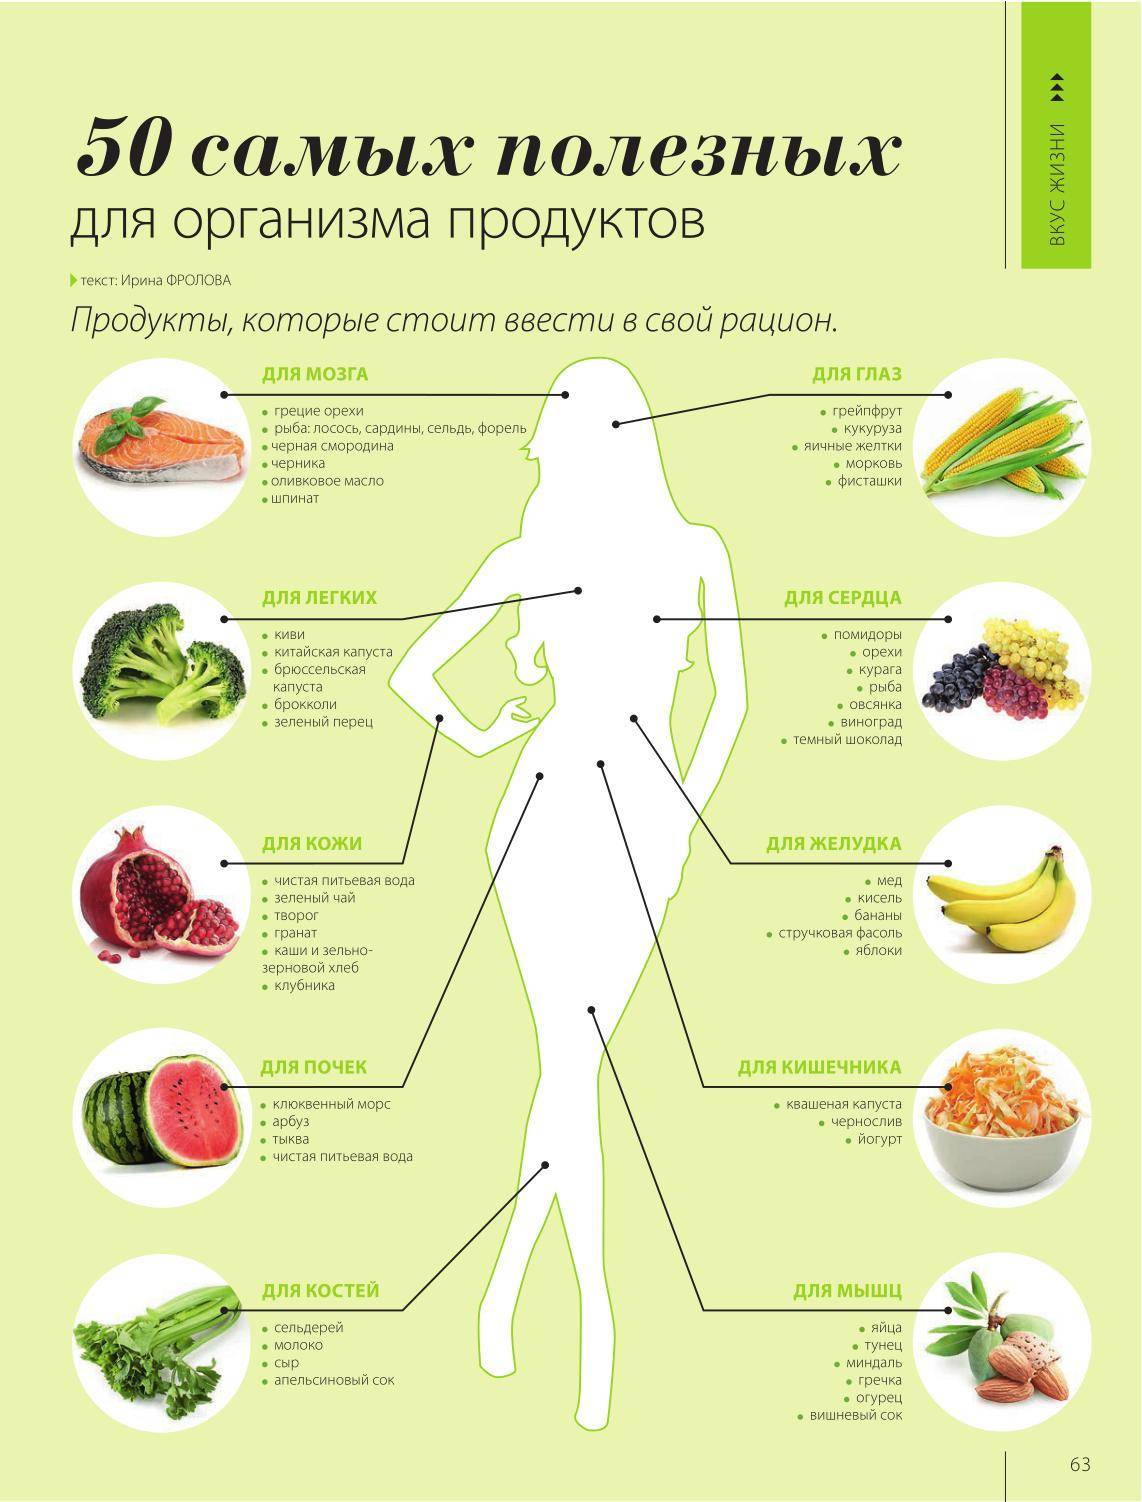 10 самых полезных продуктов для здоровья человека / список, который поможет начать путь к зож – статья из рубрики "здоровая еда" на food.ru